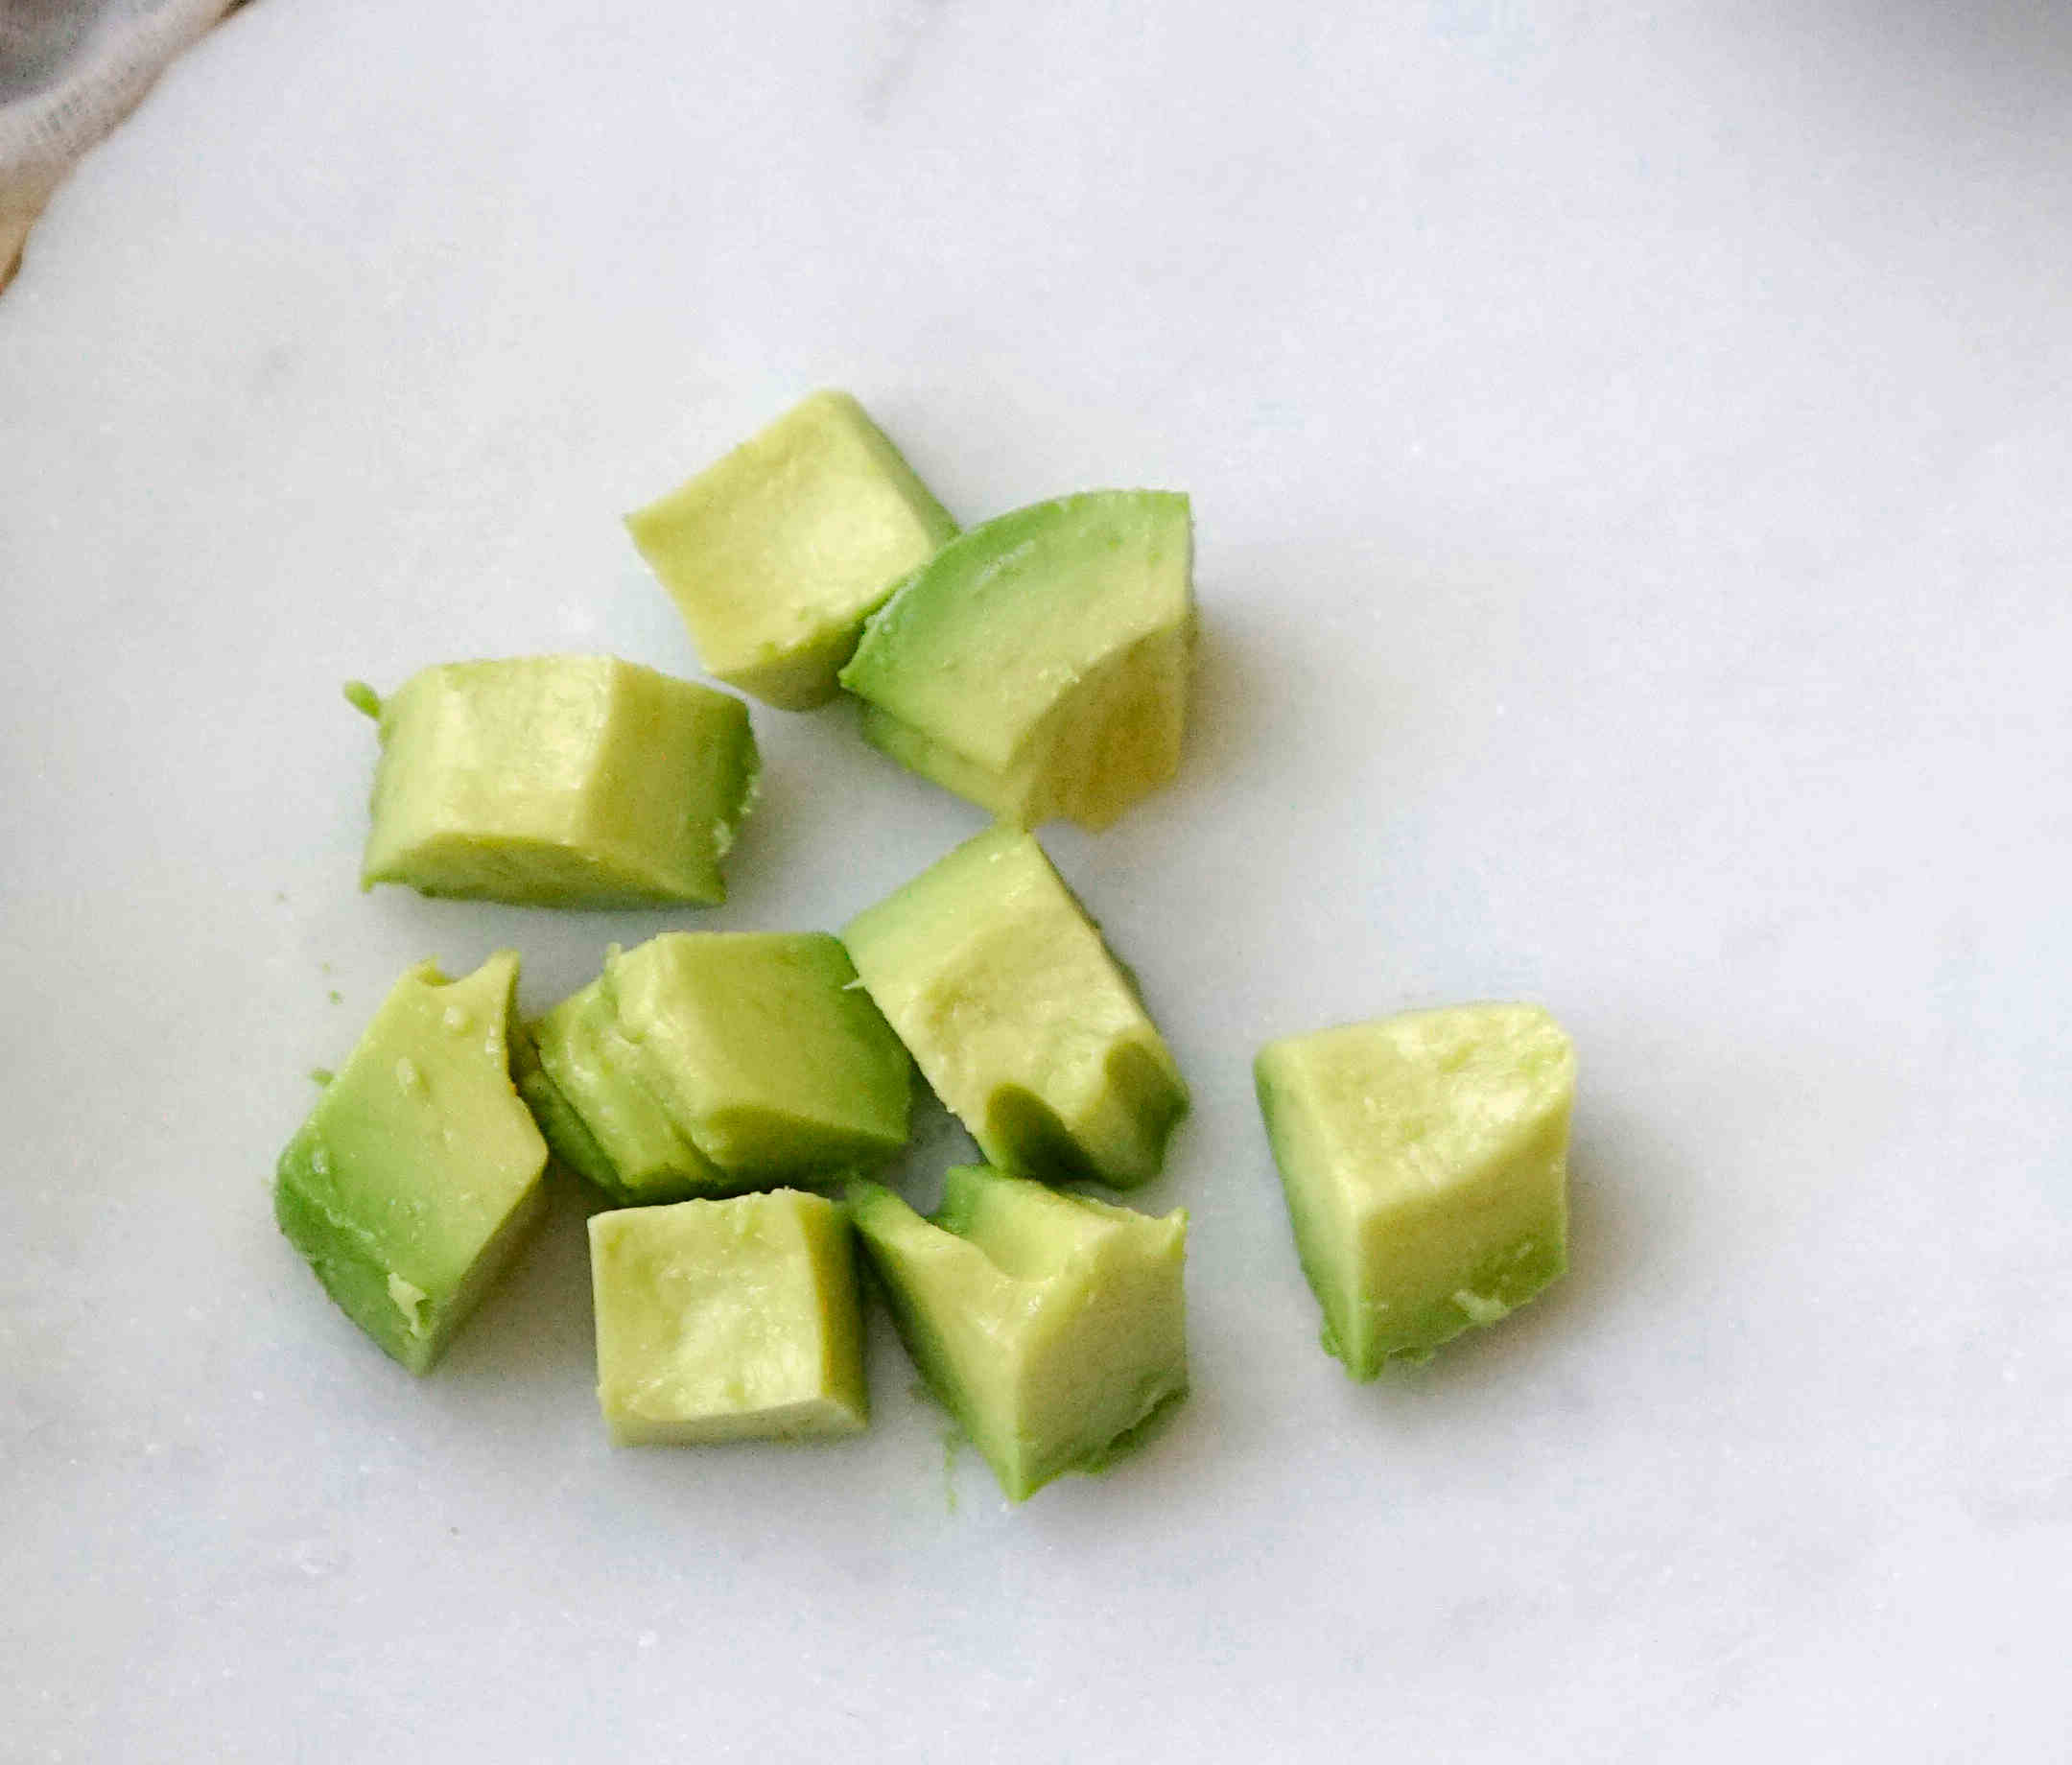 cubed avocado